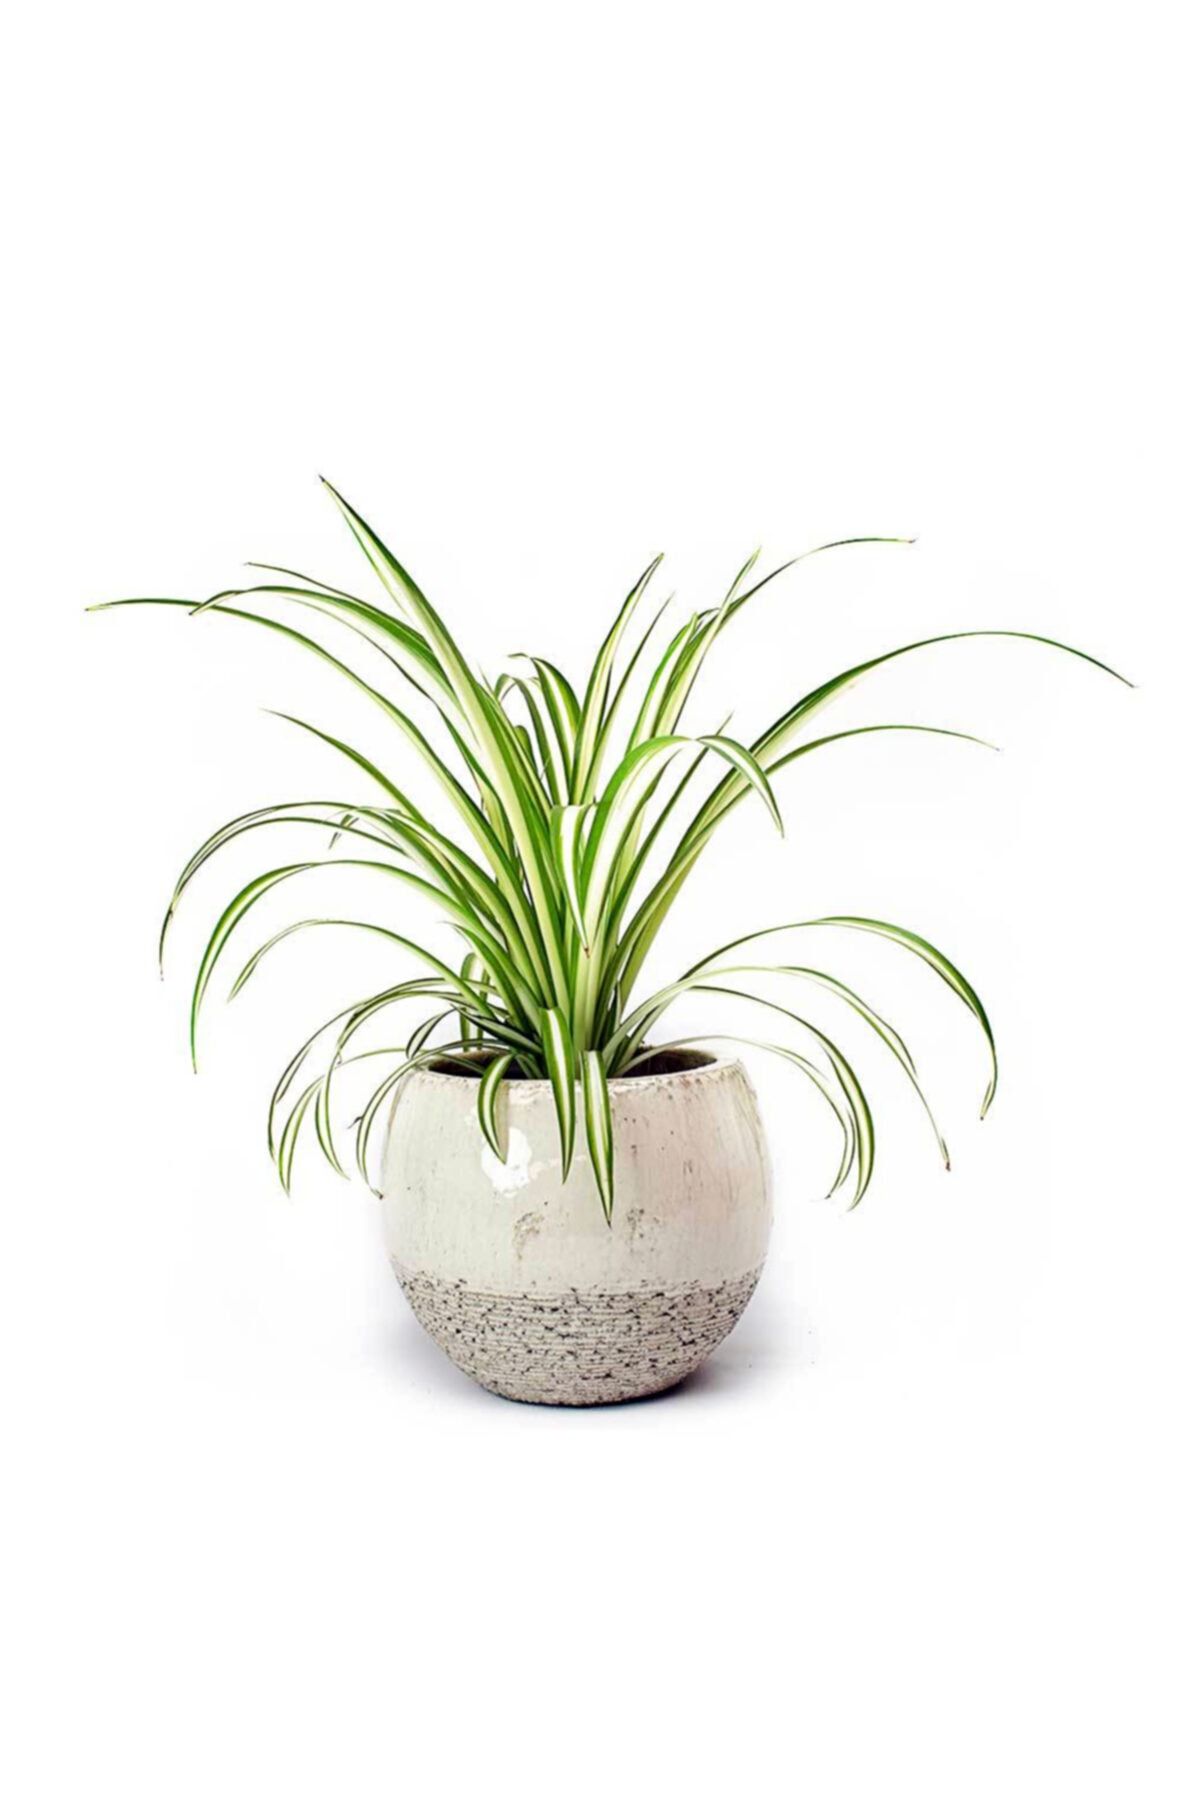 Cemre Garden Chlorophytum Comosum - Kurdele Çiçeği - Ev Ofis Salon Iç Mekan Bitkisi - 30 Cm